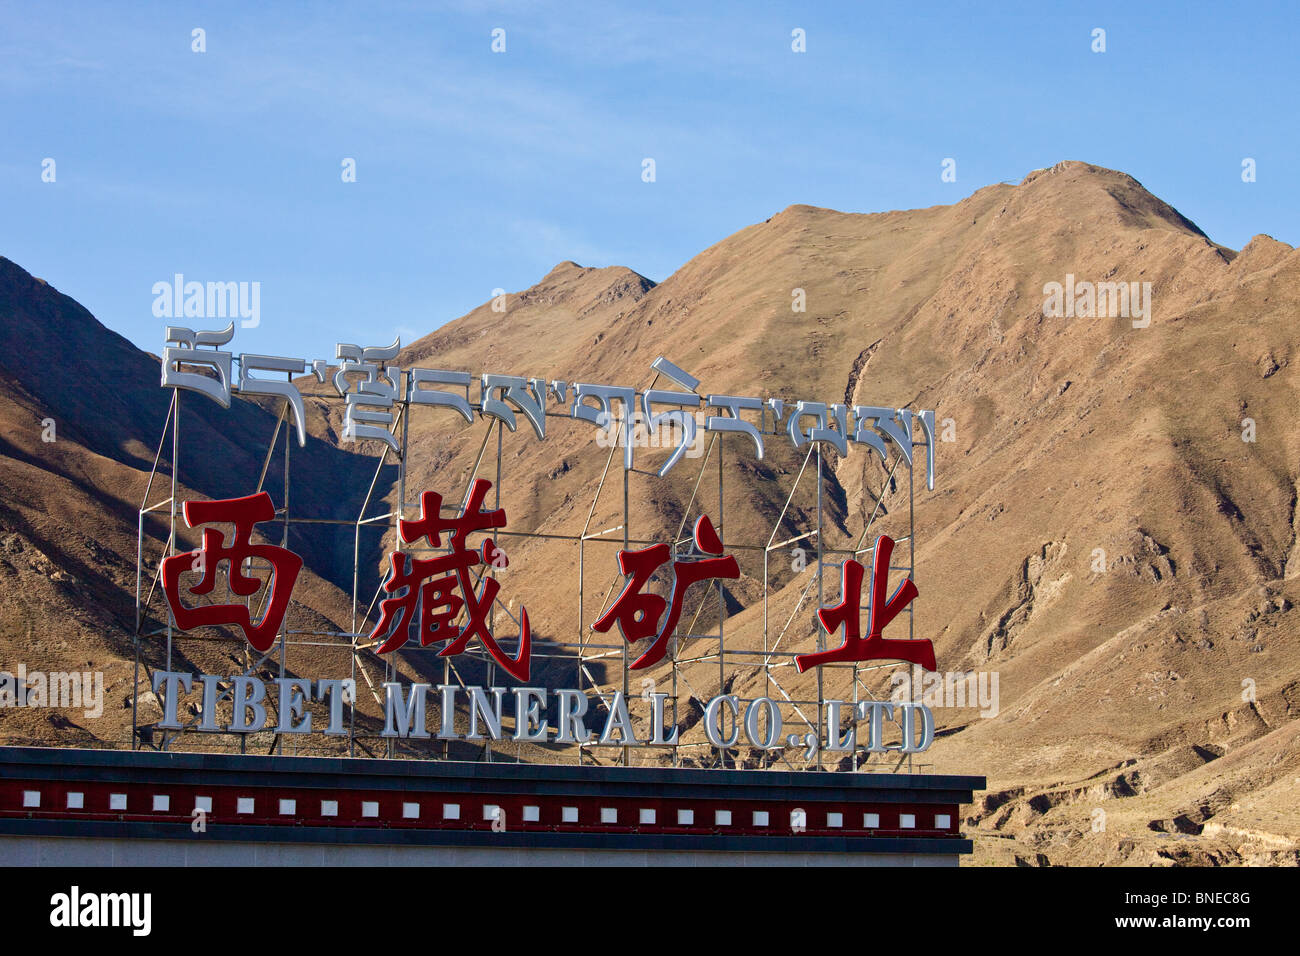 Tibet chinois Société Minière, Lhassa, Tibet Banque D'Images